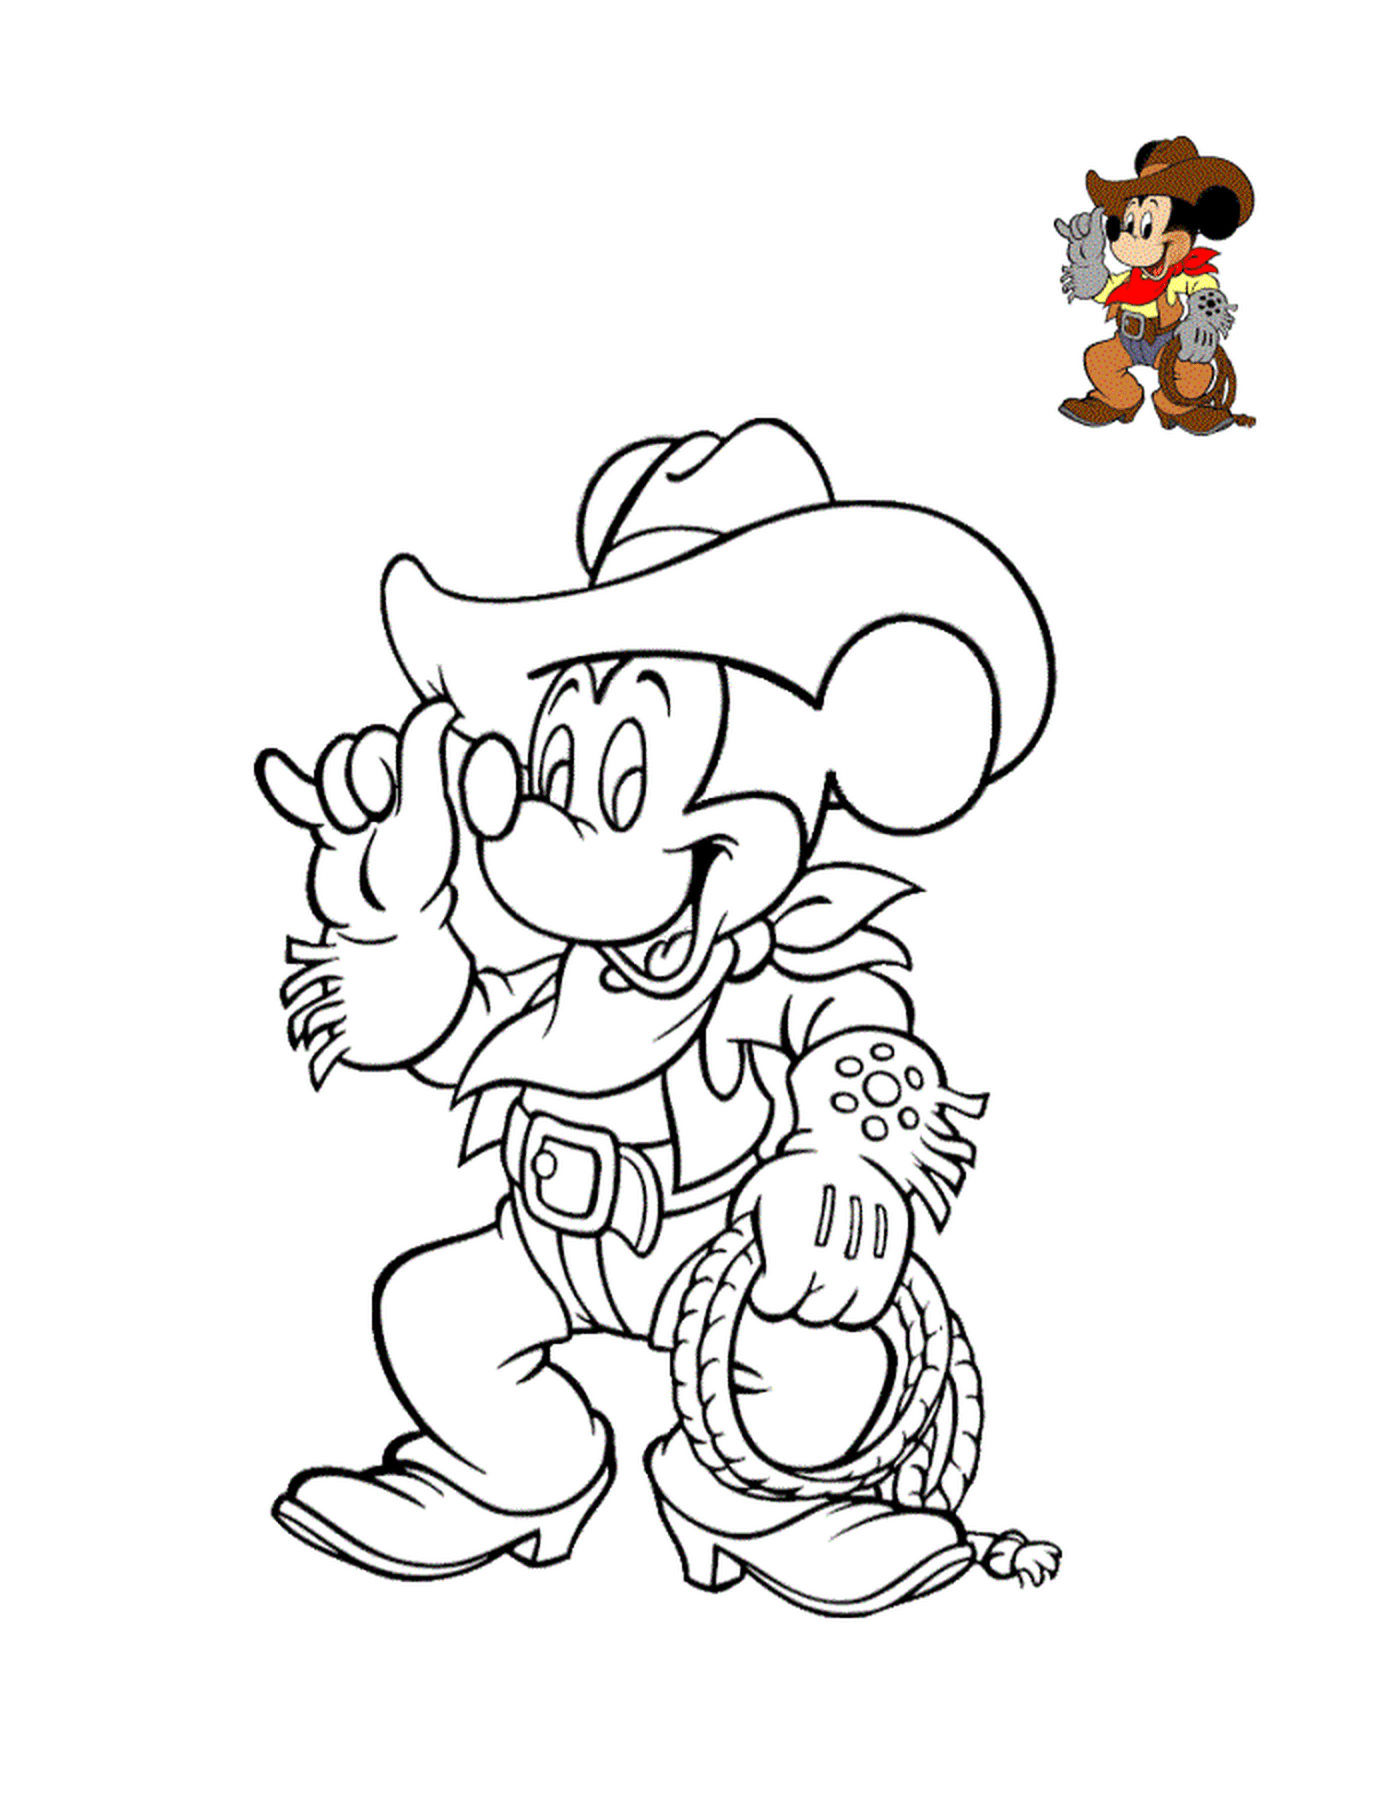  Mickey Mouse com botas e um chapéu de cowboy 